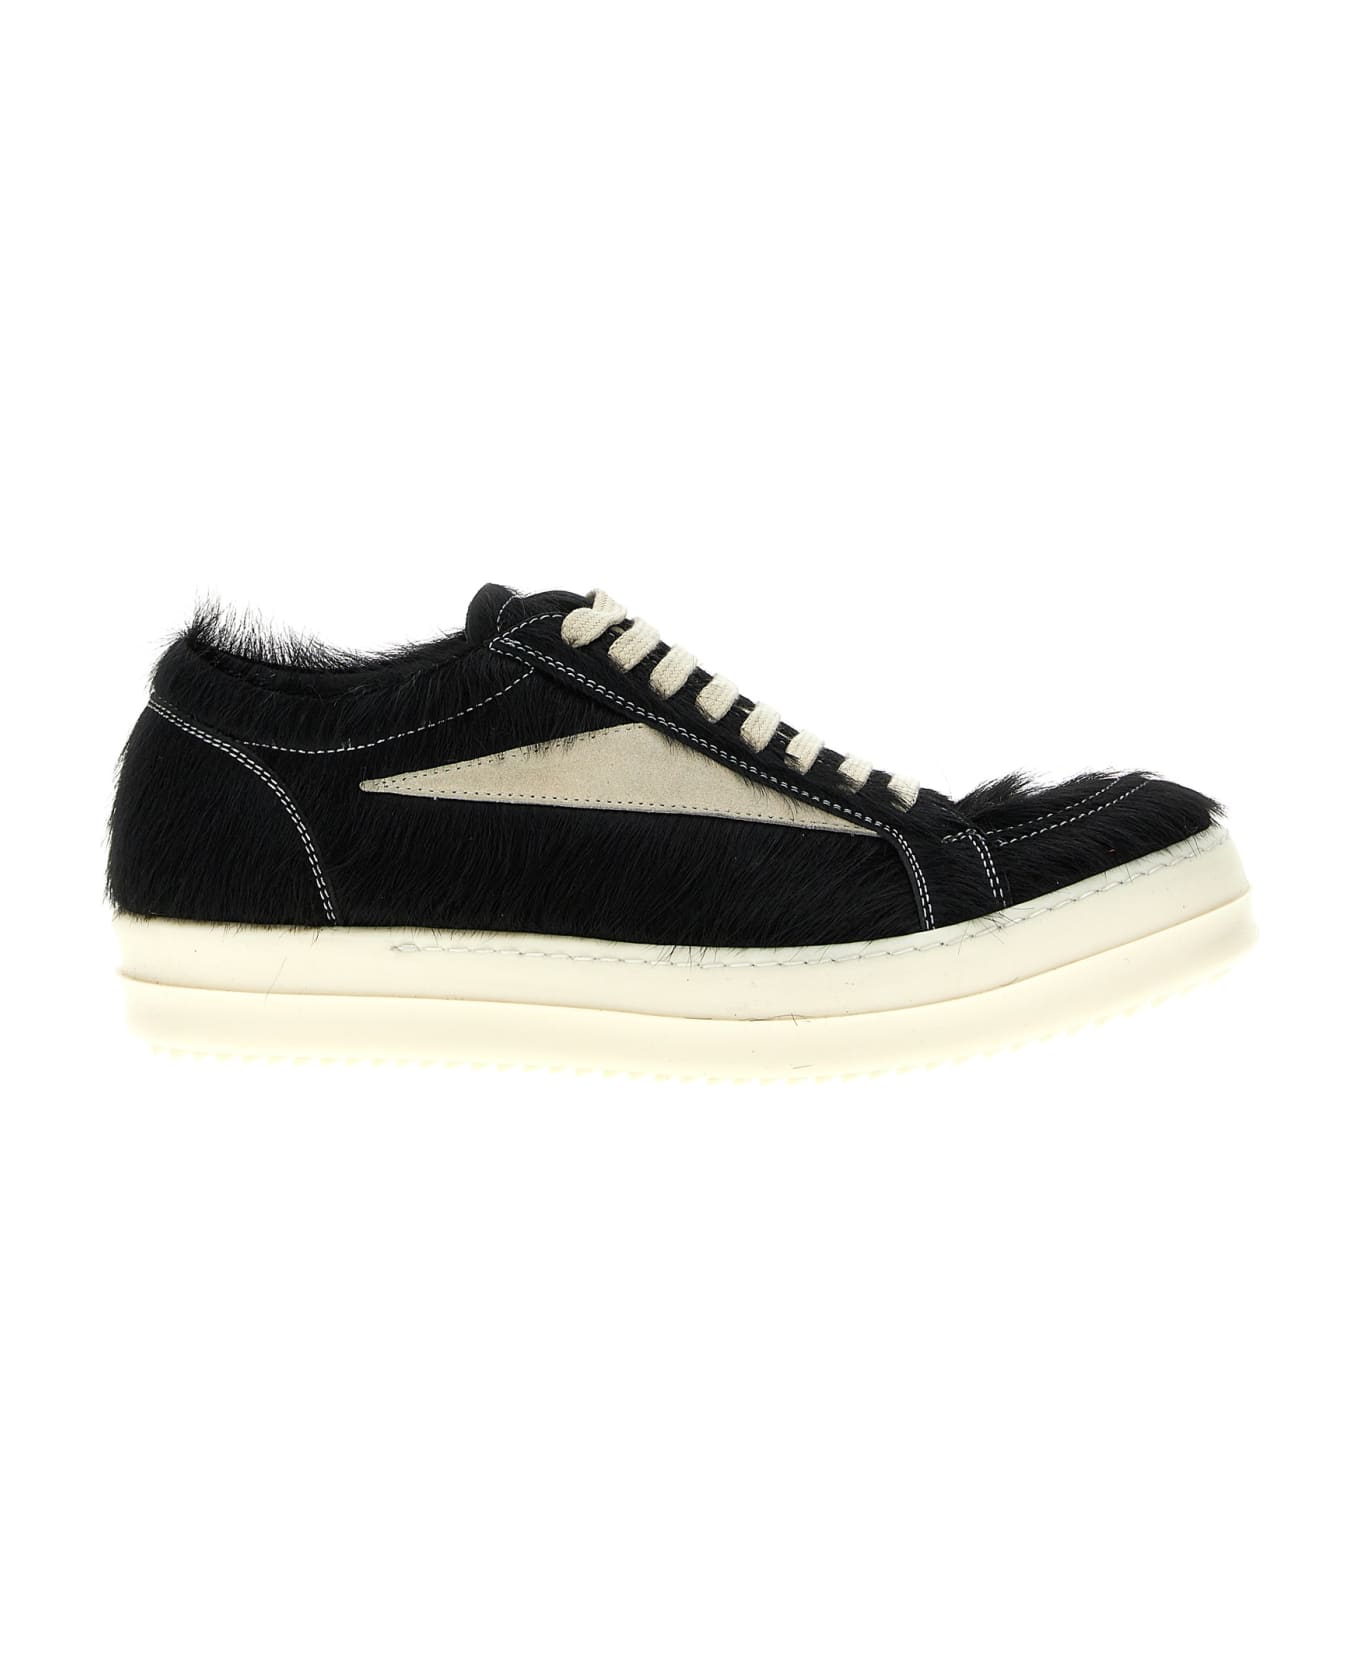 Rick Owens 'vintage Sneaks' Sneakers - White/Black スニーカー